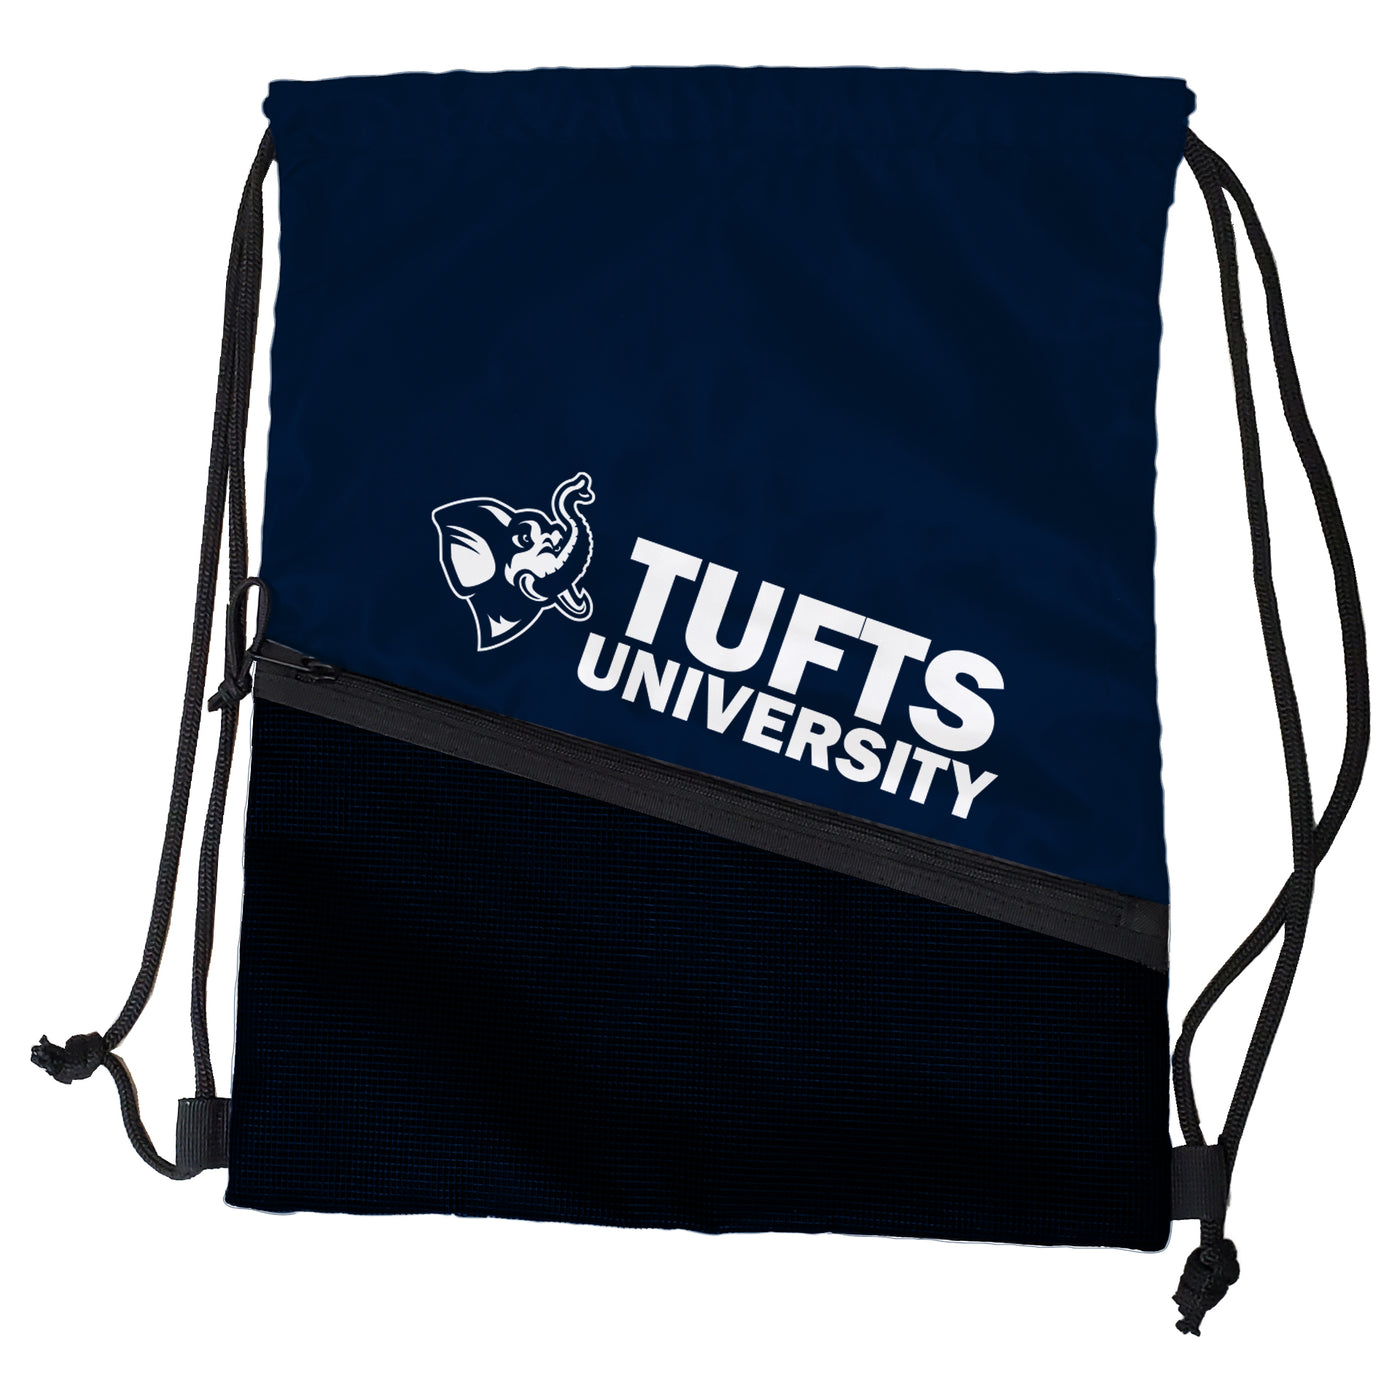 Tufts Tilt Backsack